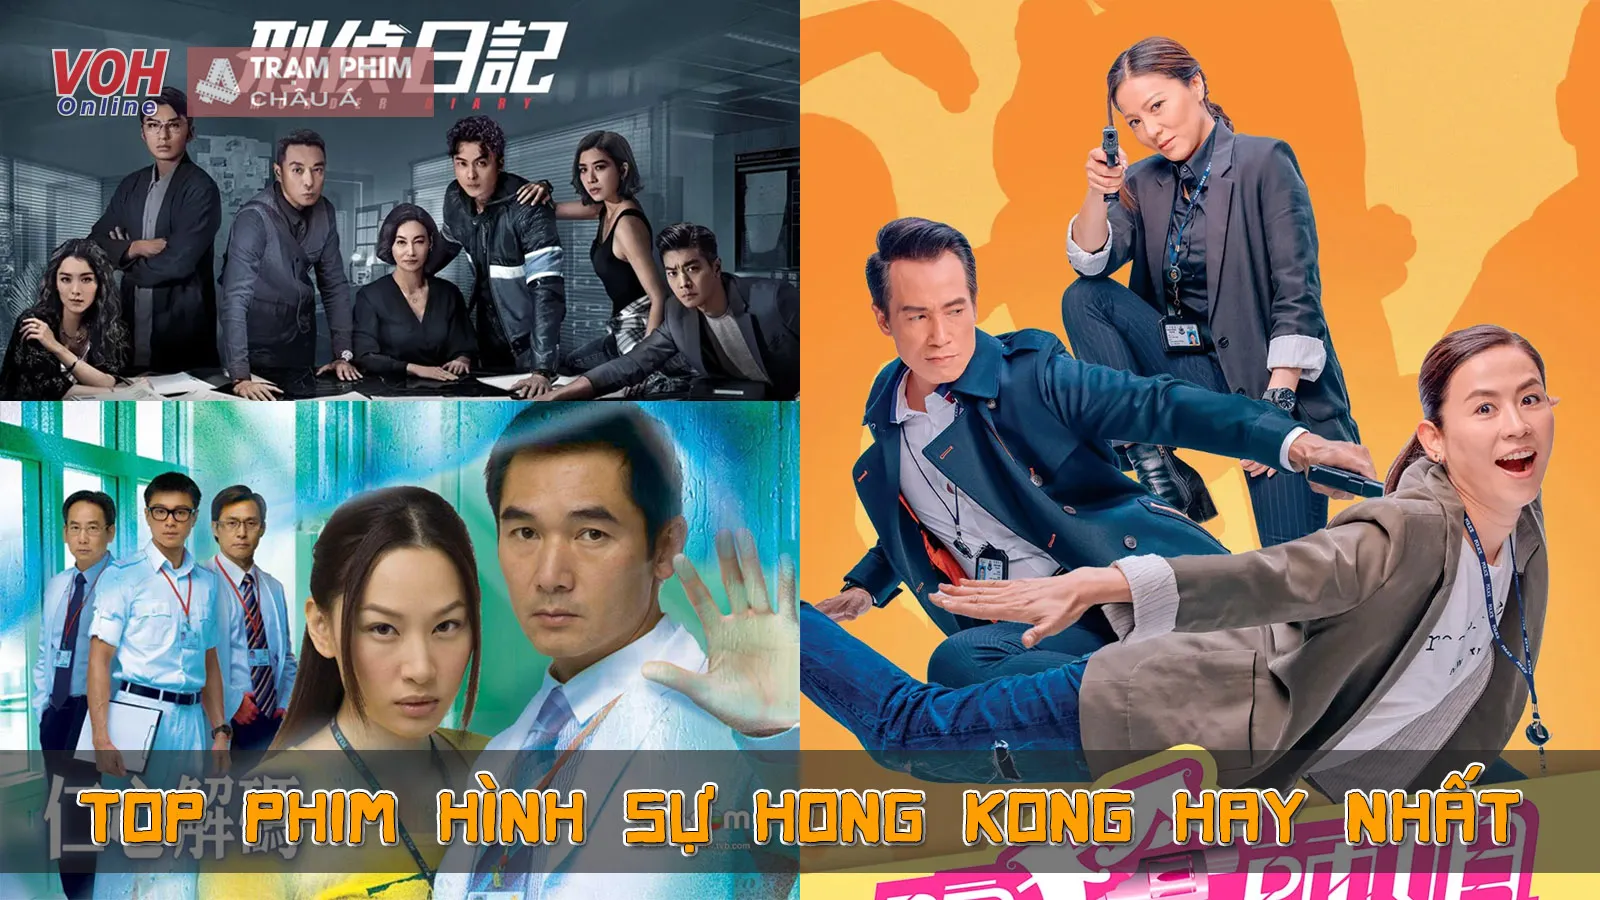 Top 10 phim hình sự Hong Kong TVB hay nhất lôi cuốn người xem